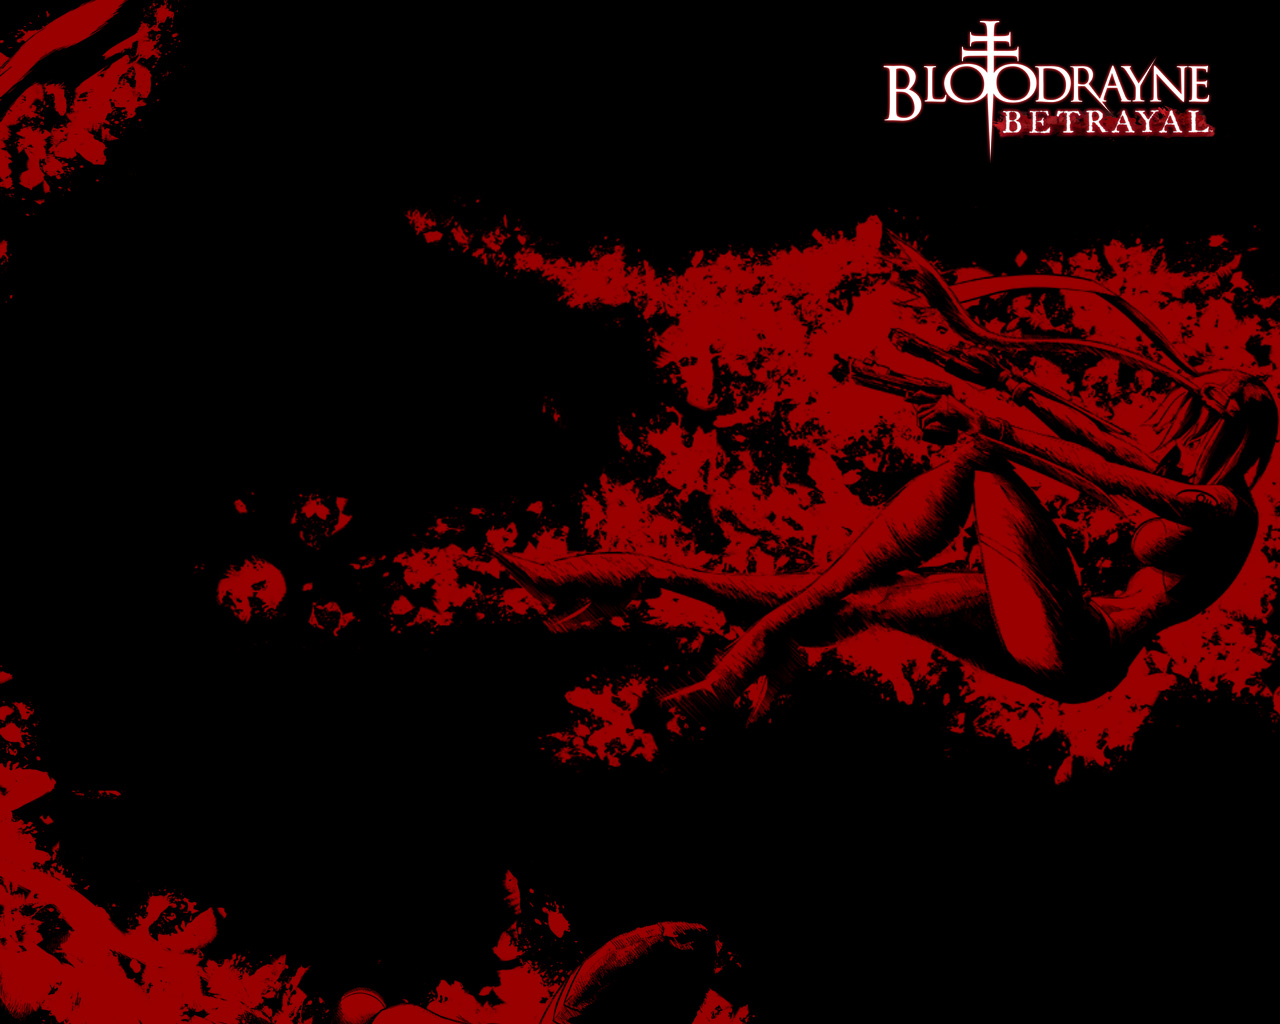 Los mejores fondos de pantalla de Bloodrayne: Betrayal para la pantalla del teléfono